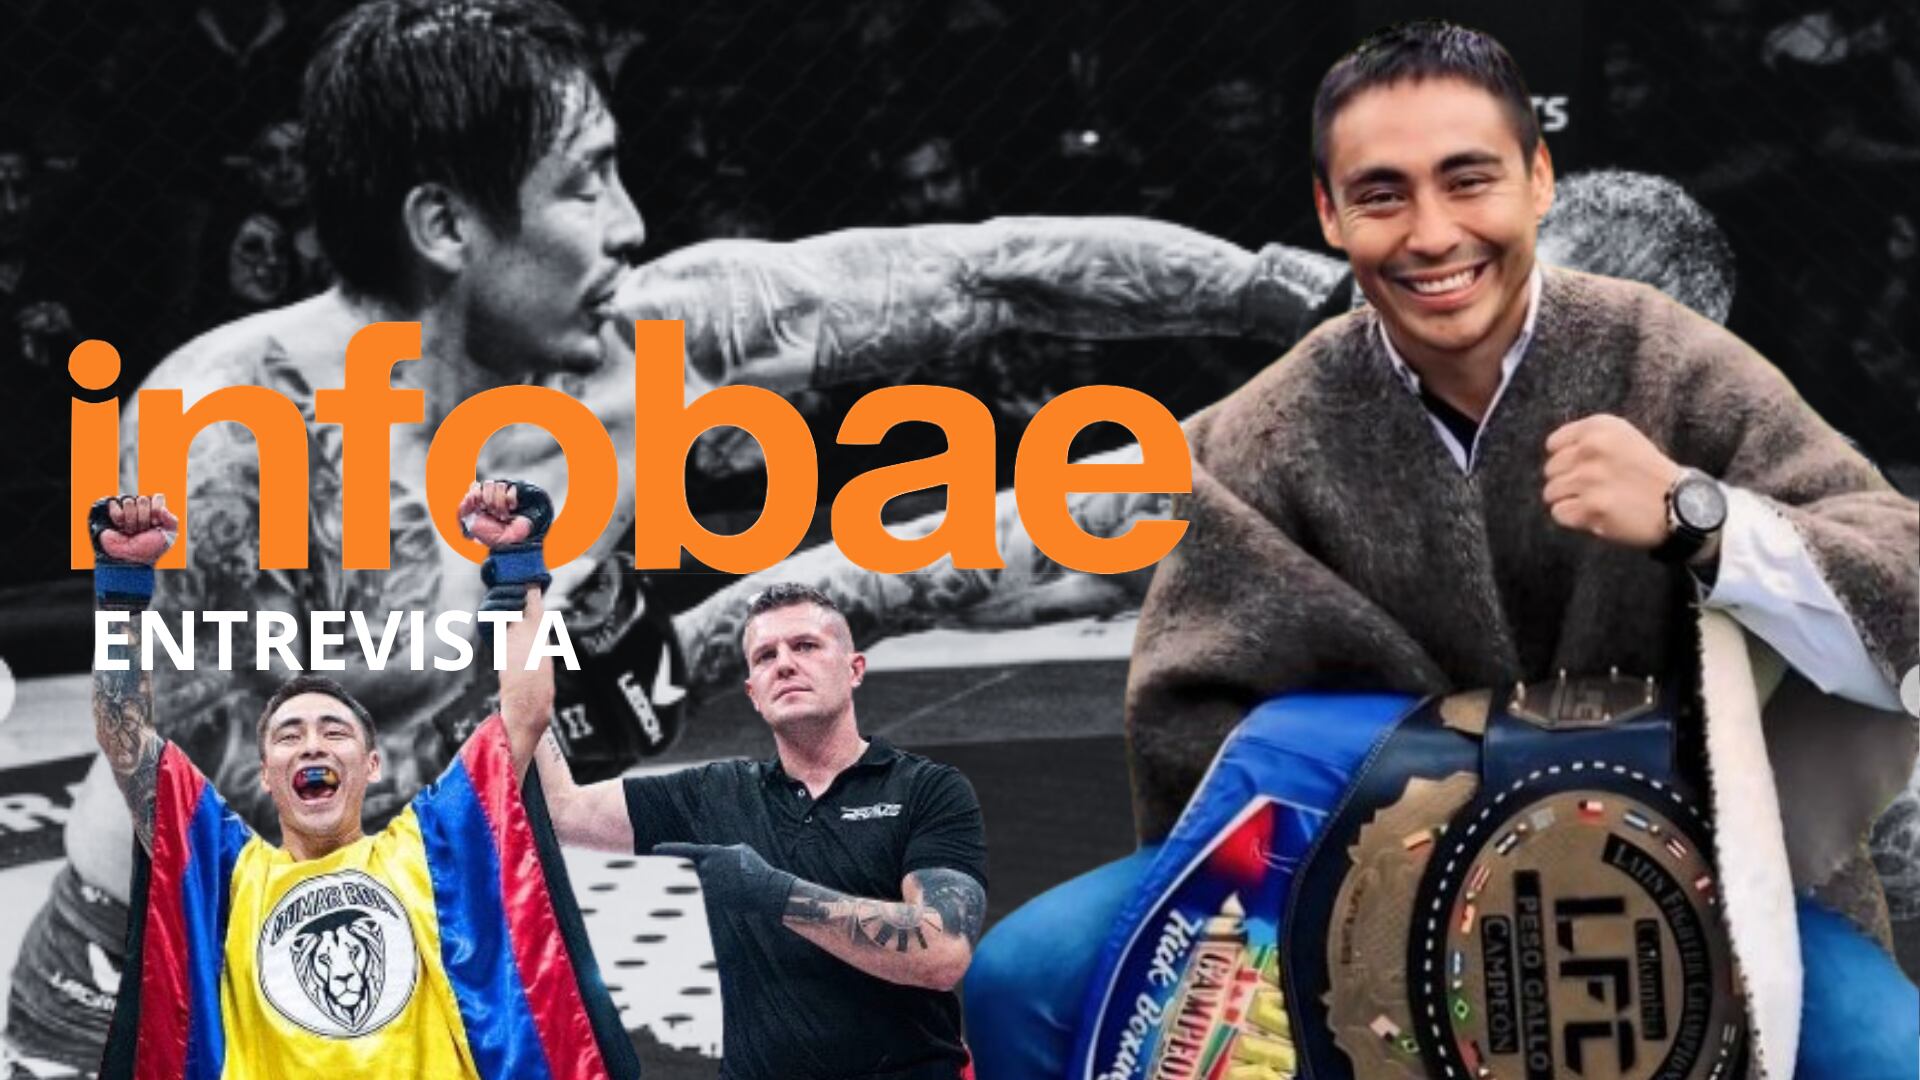 El peleador colombiano Dumar Roa suma 13 años peleando en la élite de las artes marciales mixtas - crédito Dumar Roa / Instagram - Brave MMA